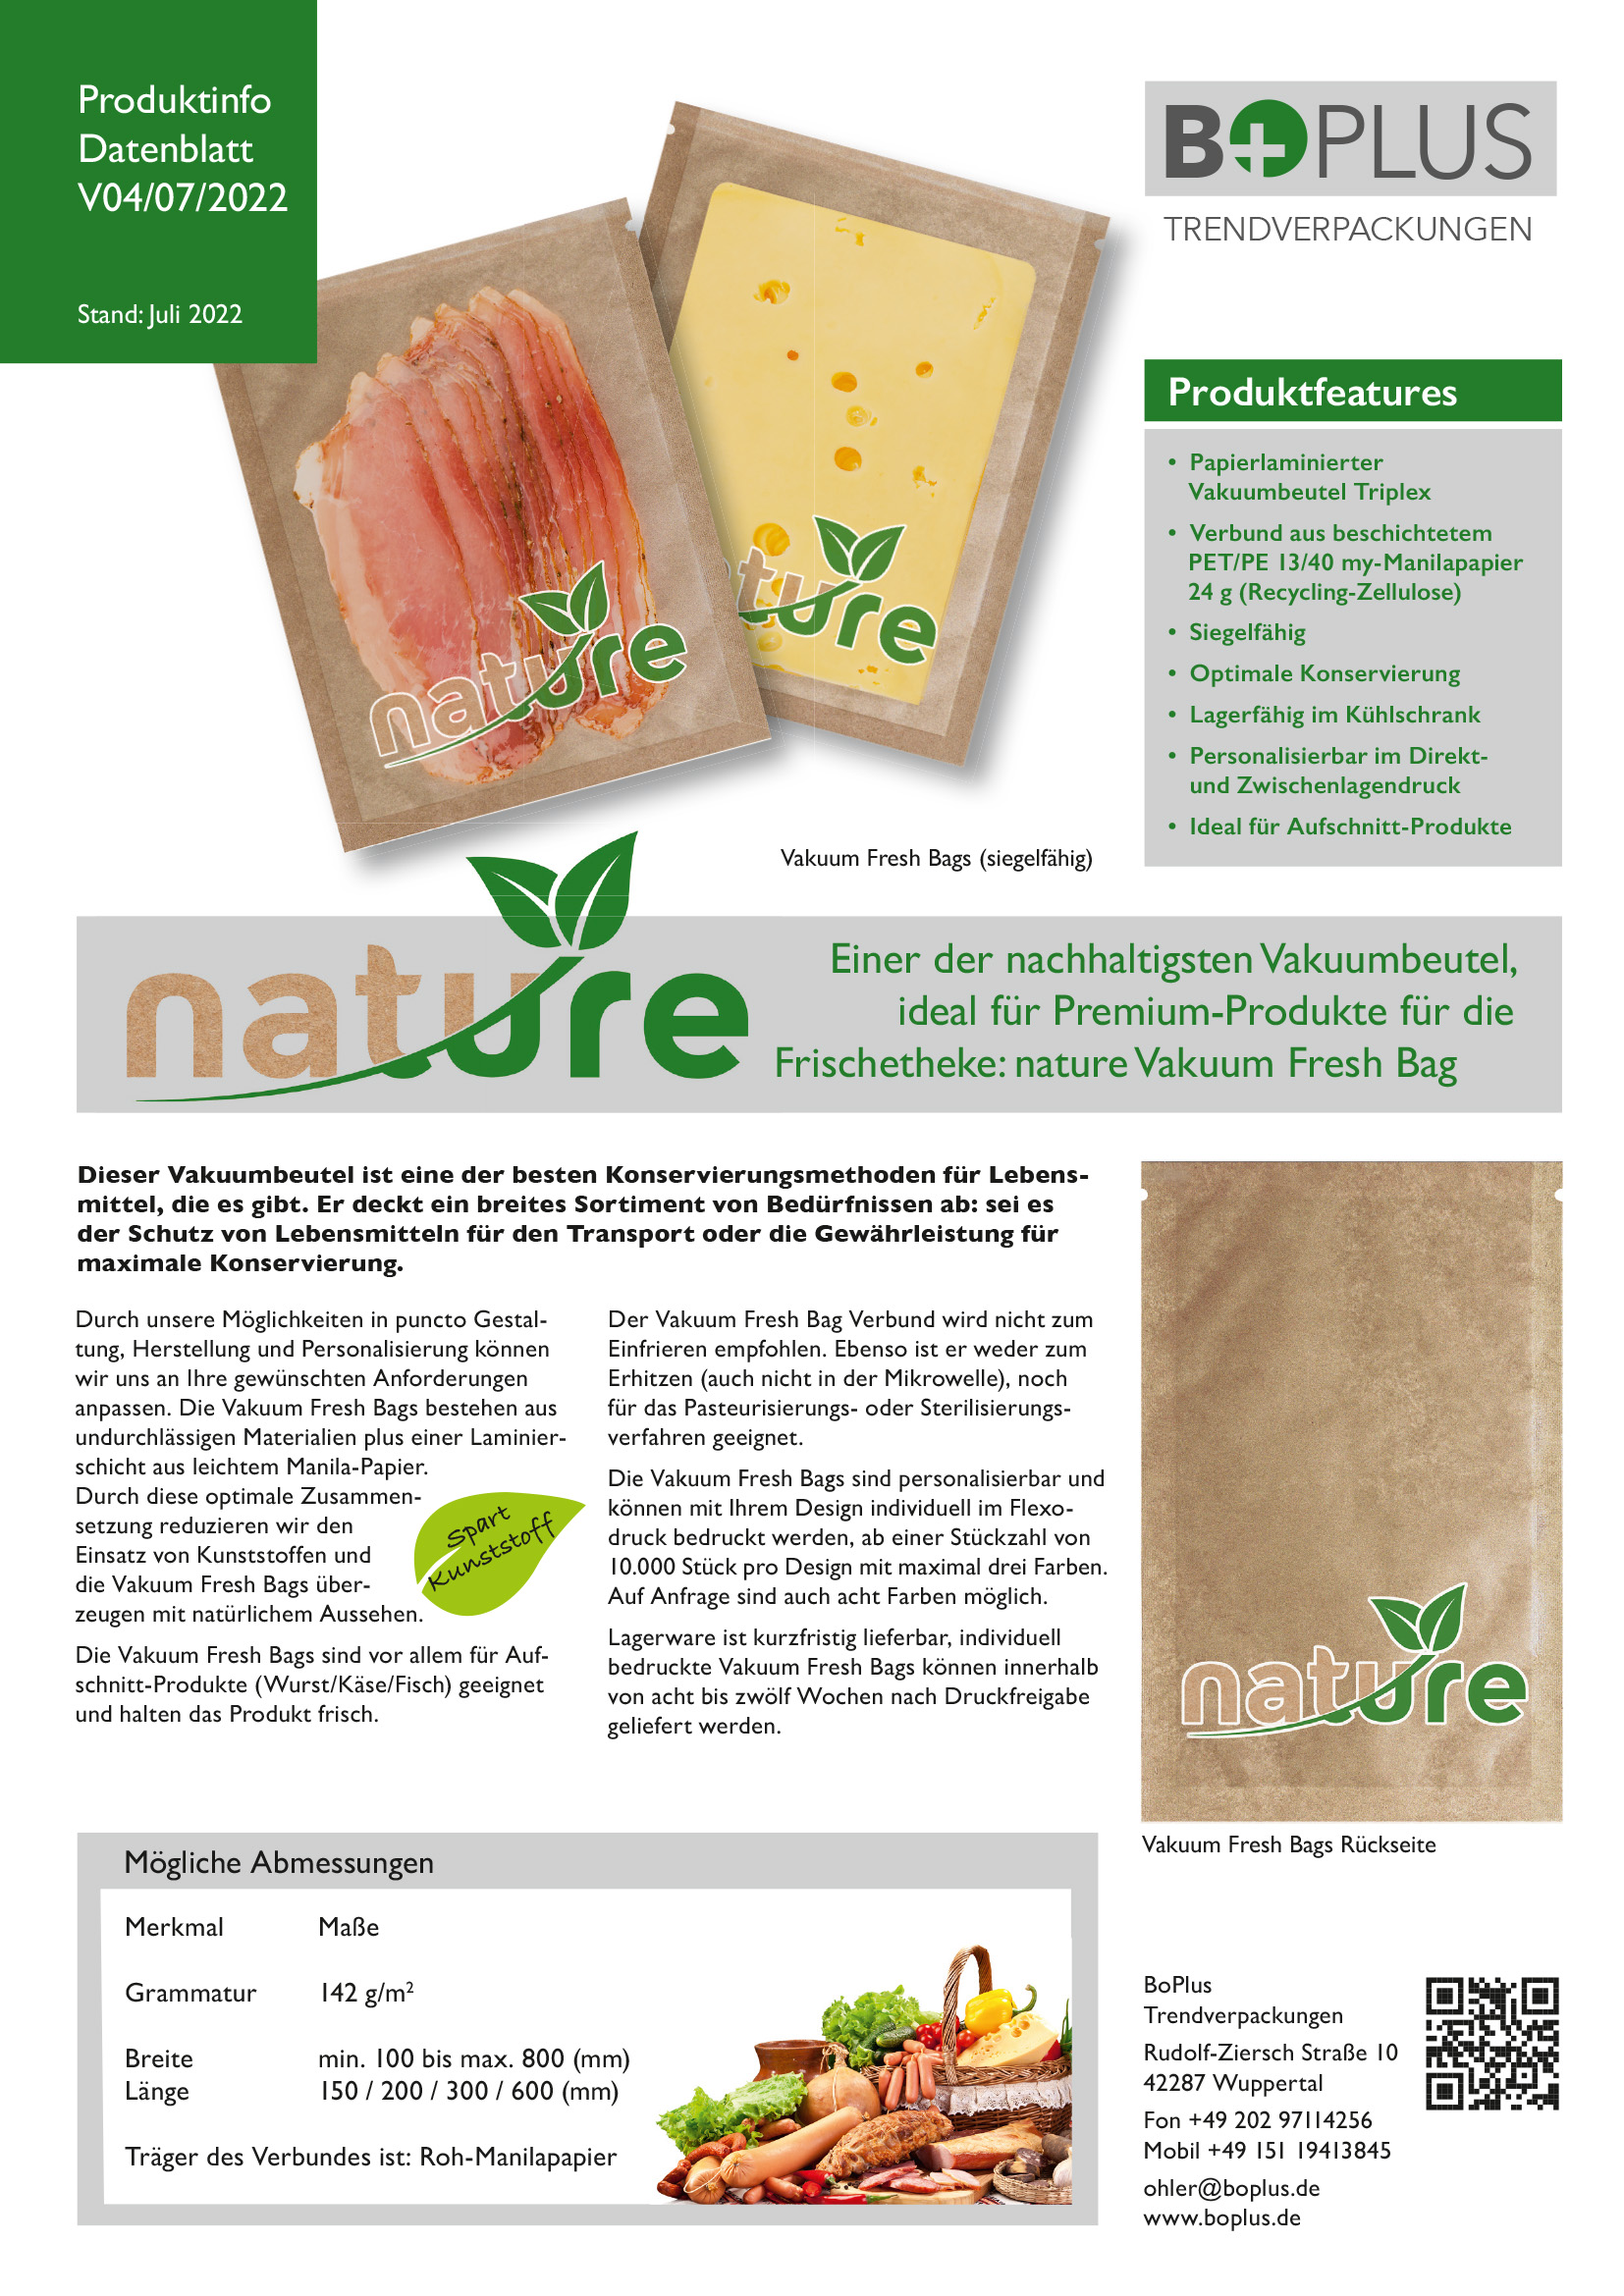 BOplus nature fresh bags Produktinfo V04 07 2022